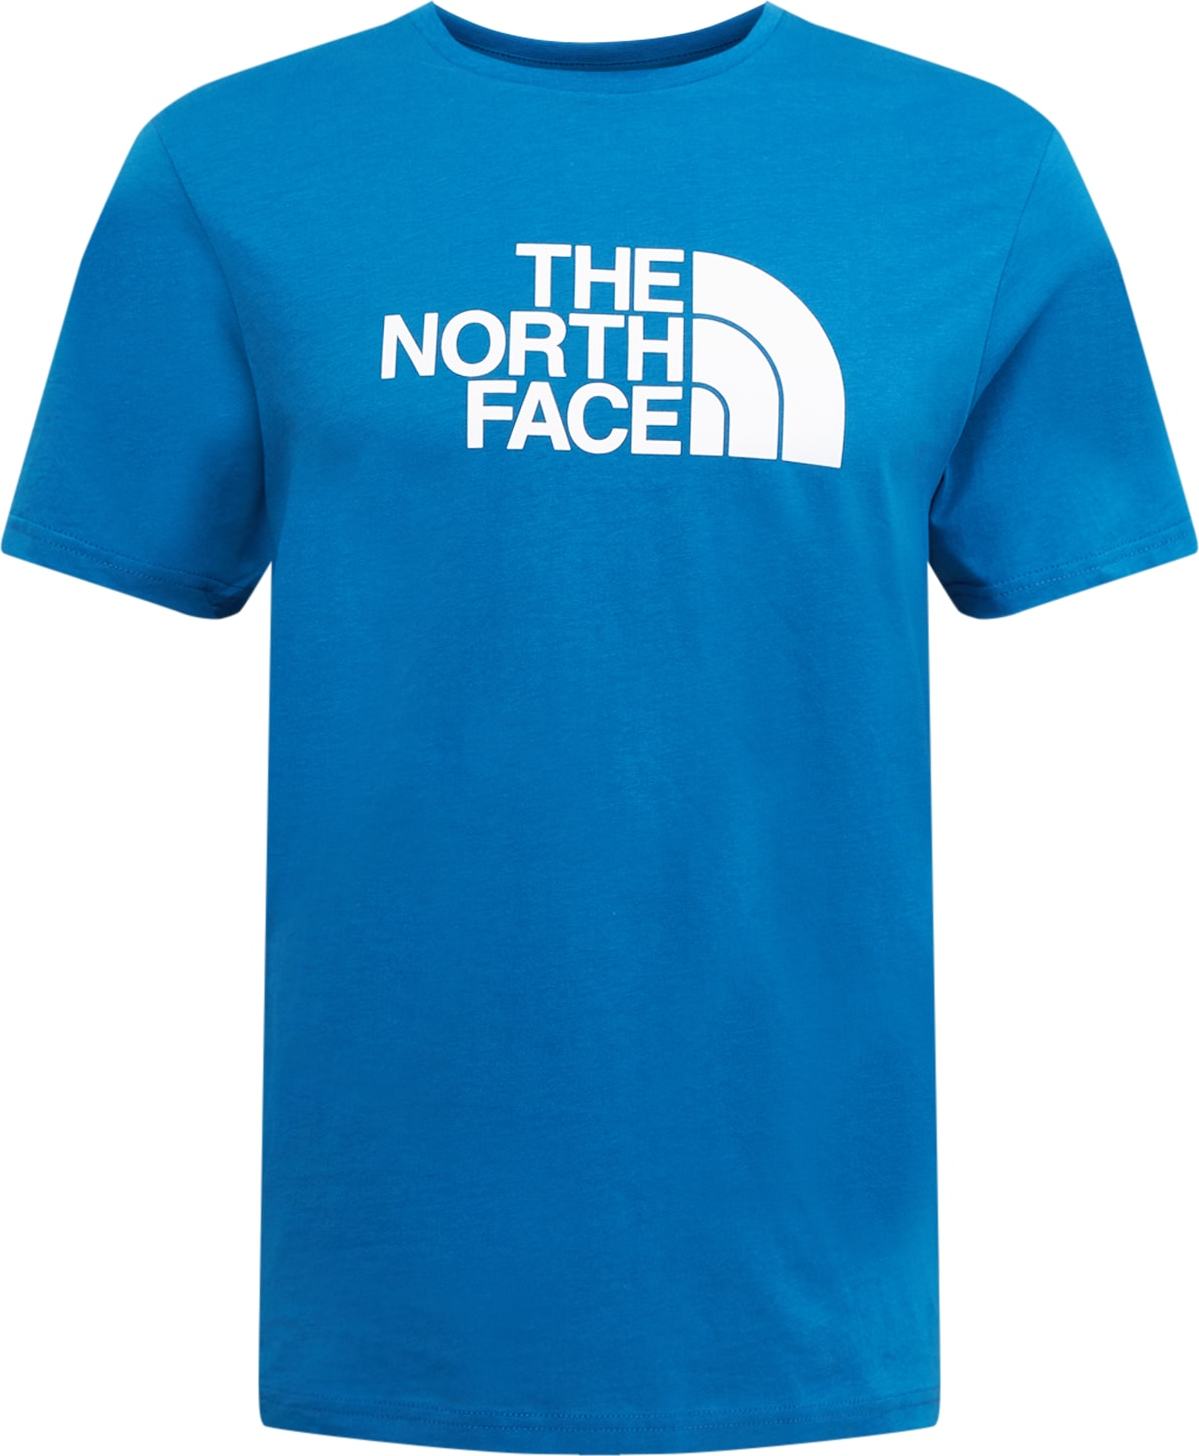 THE NORTH FACE Funkční tričko modrá / bílá